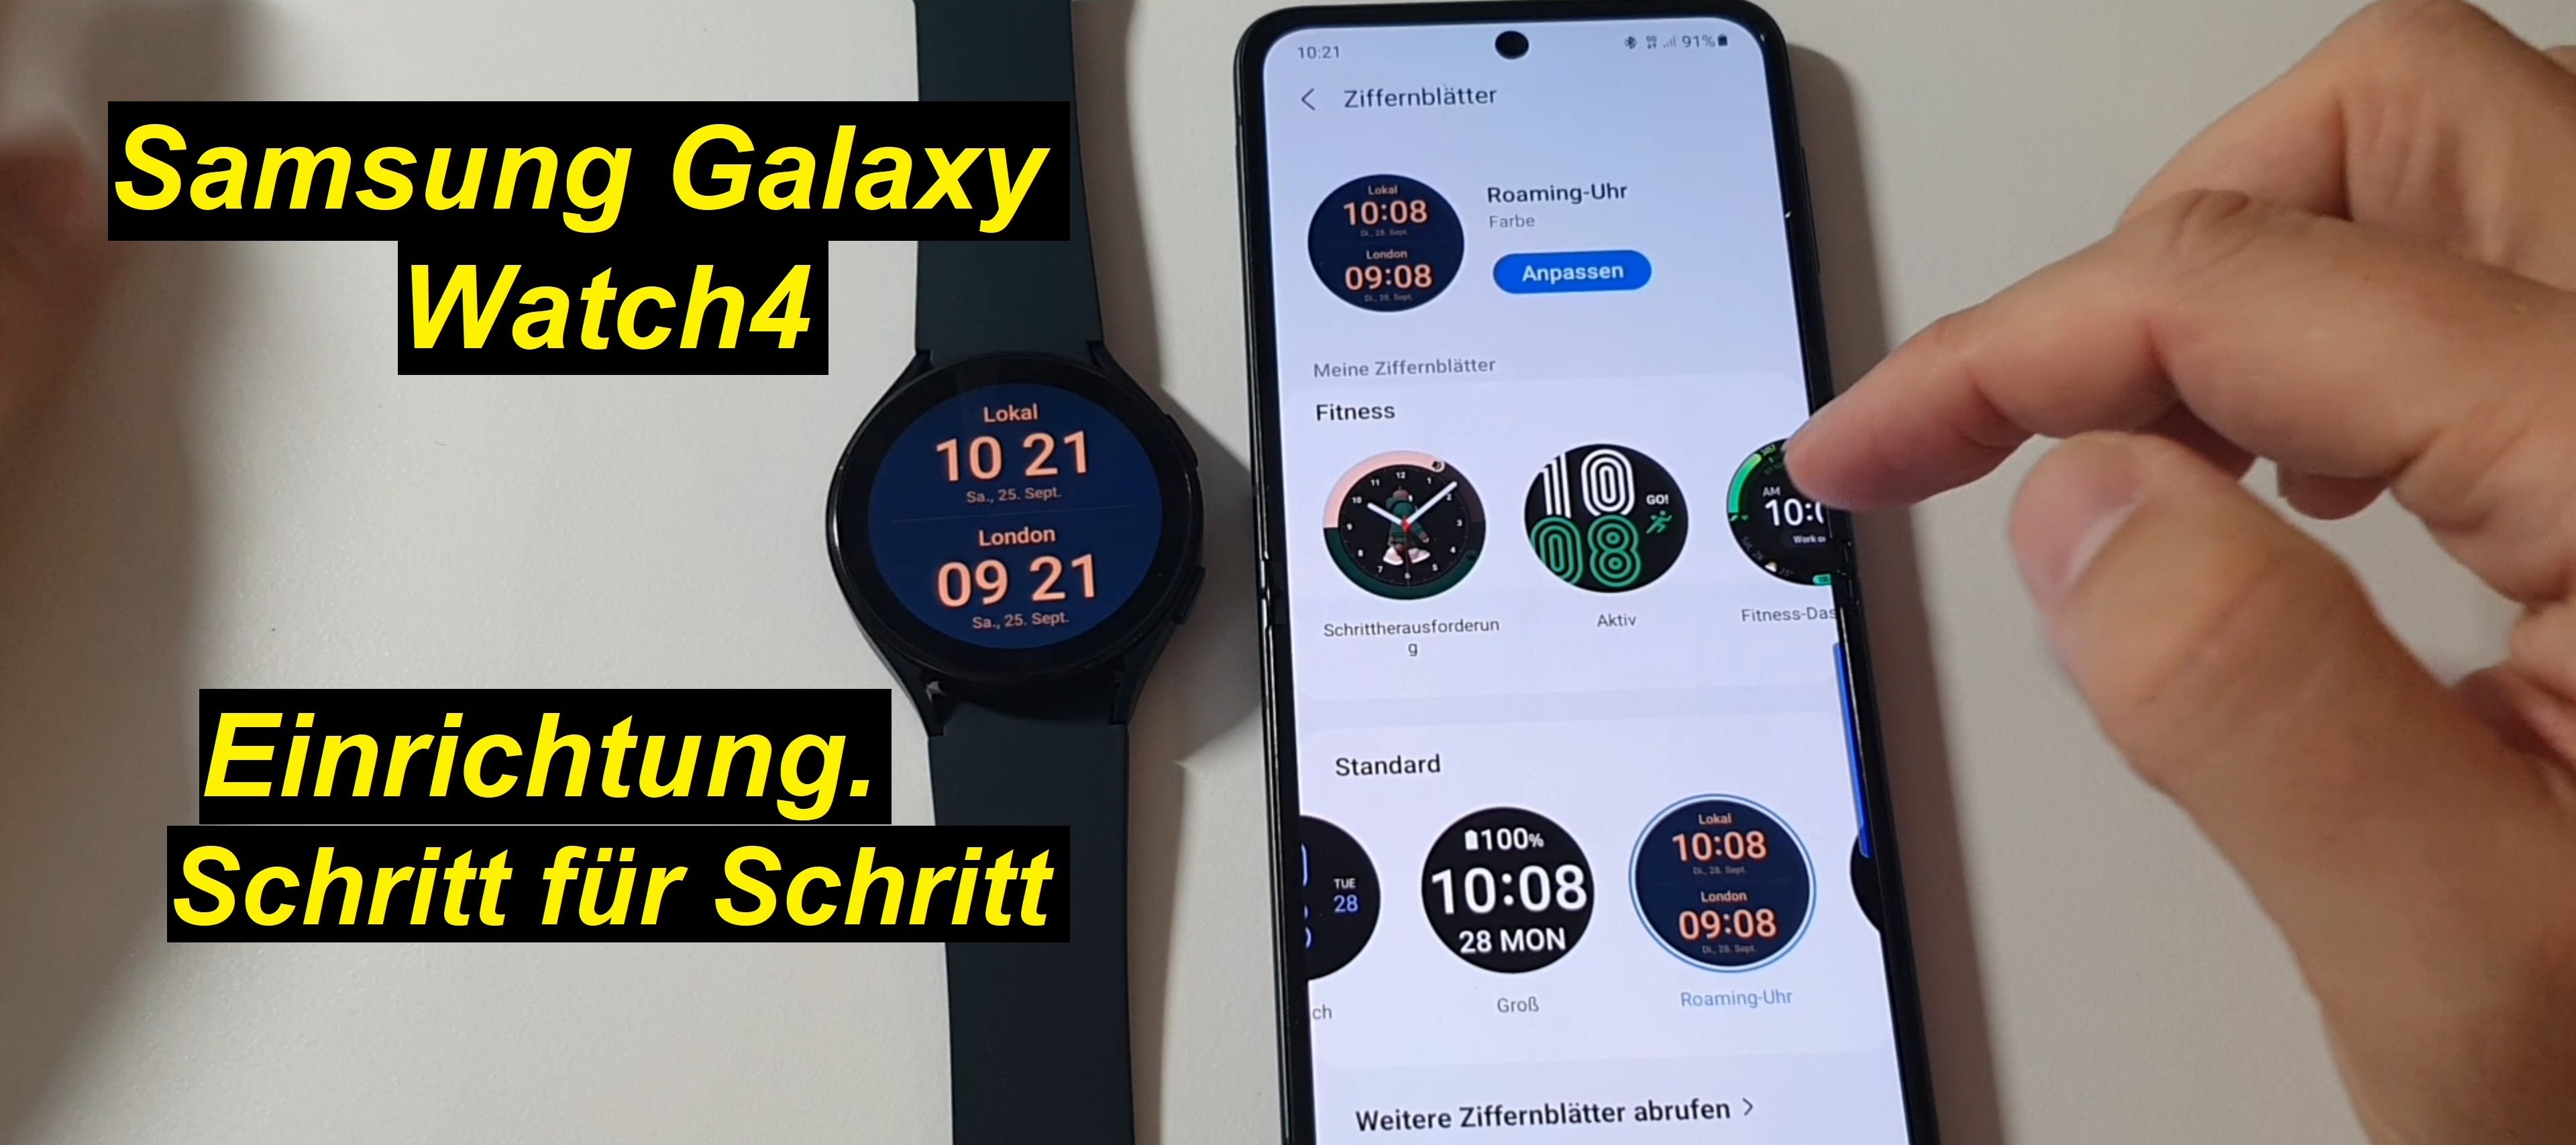 Tutorial: Samsung Galaxy Watch4 einrichten. Ausführlich erklärt. Schritt für Schritt